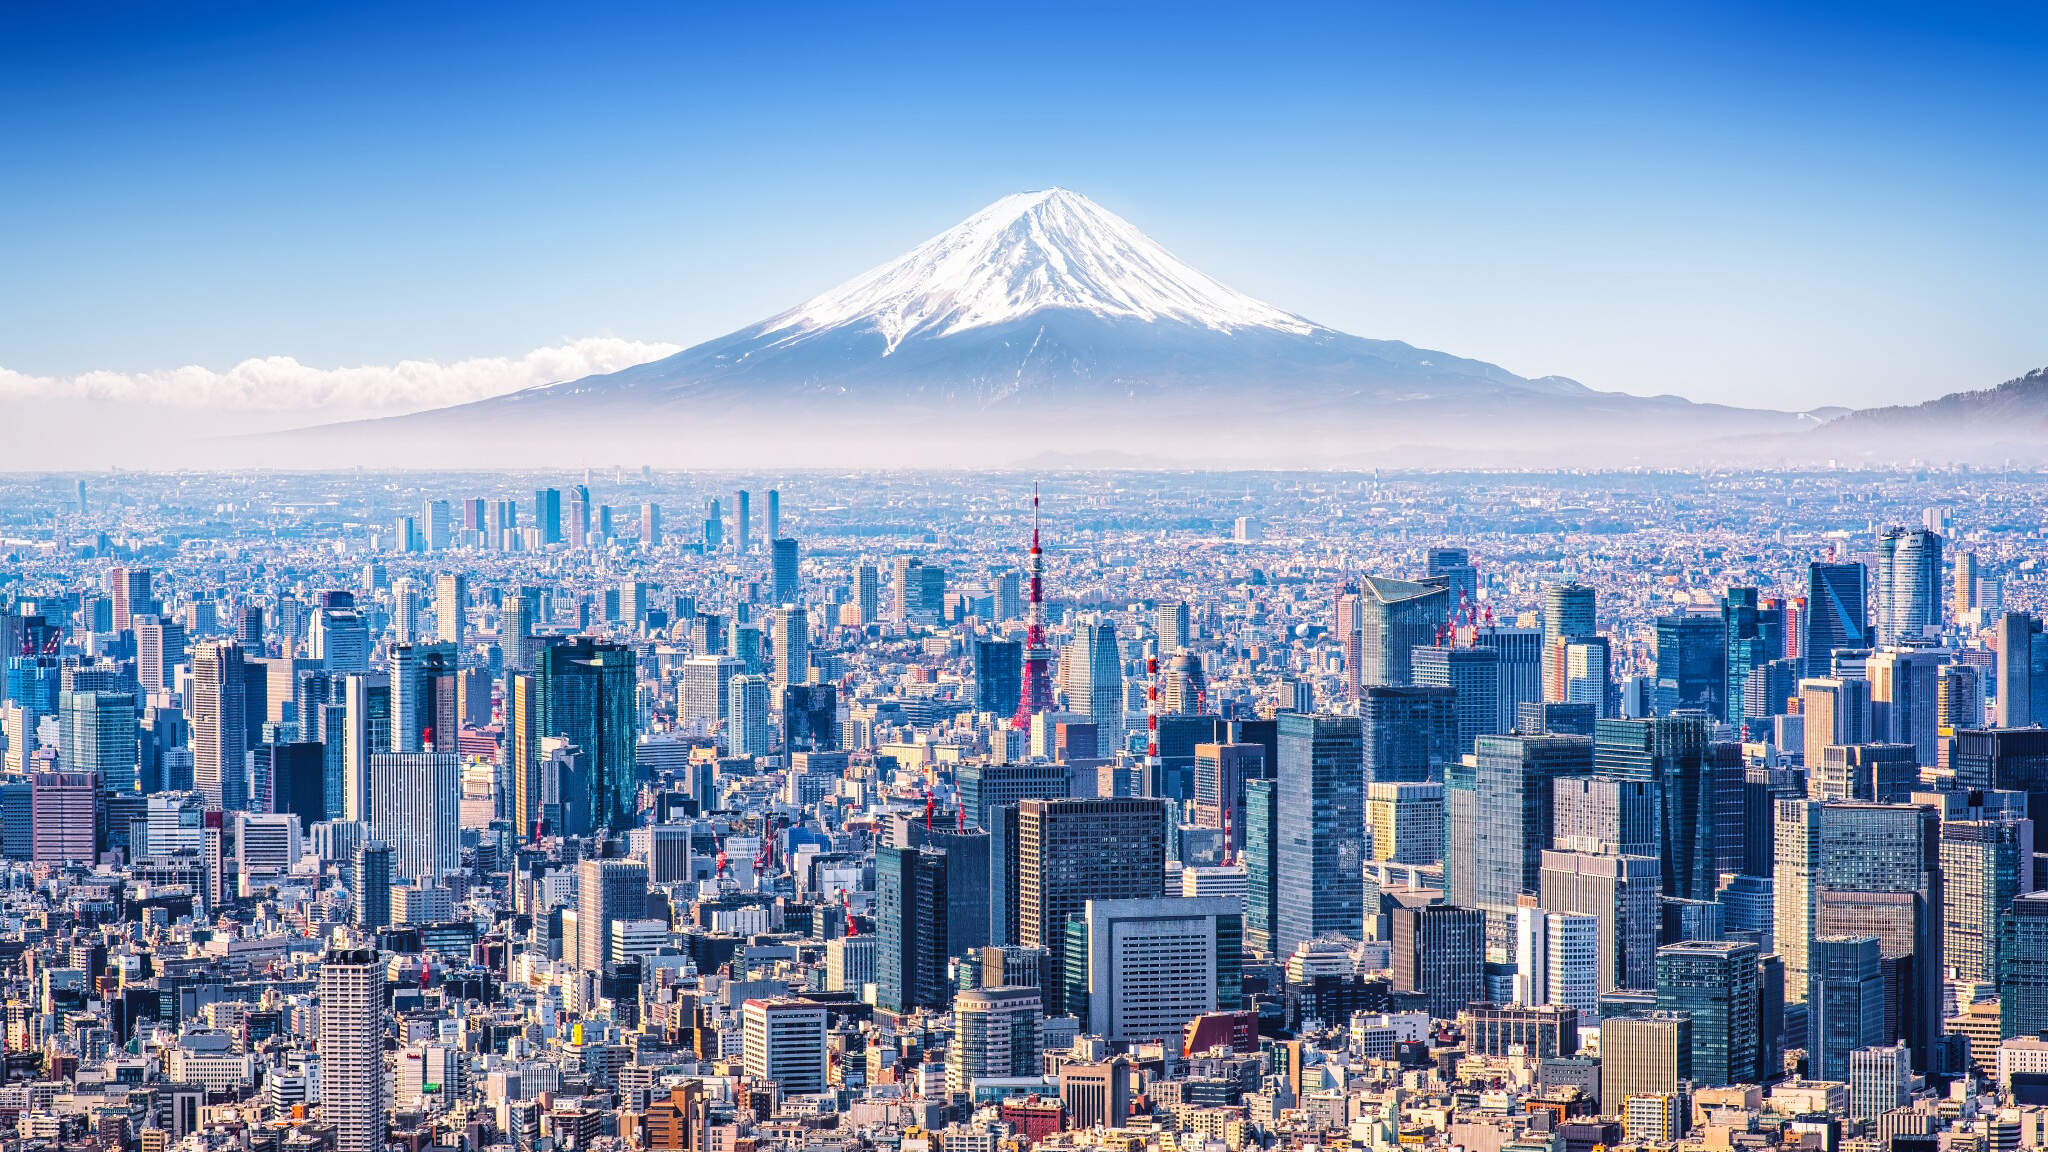 Die Wirtschaftsmetropole Tokio zu Füßen des Mount Fuji.